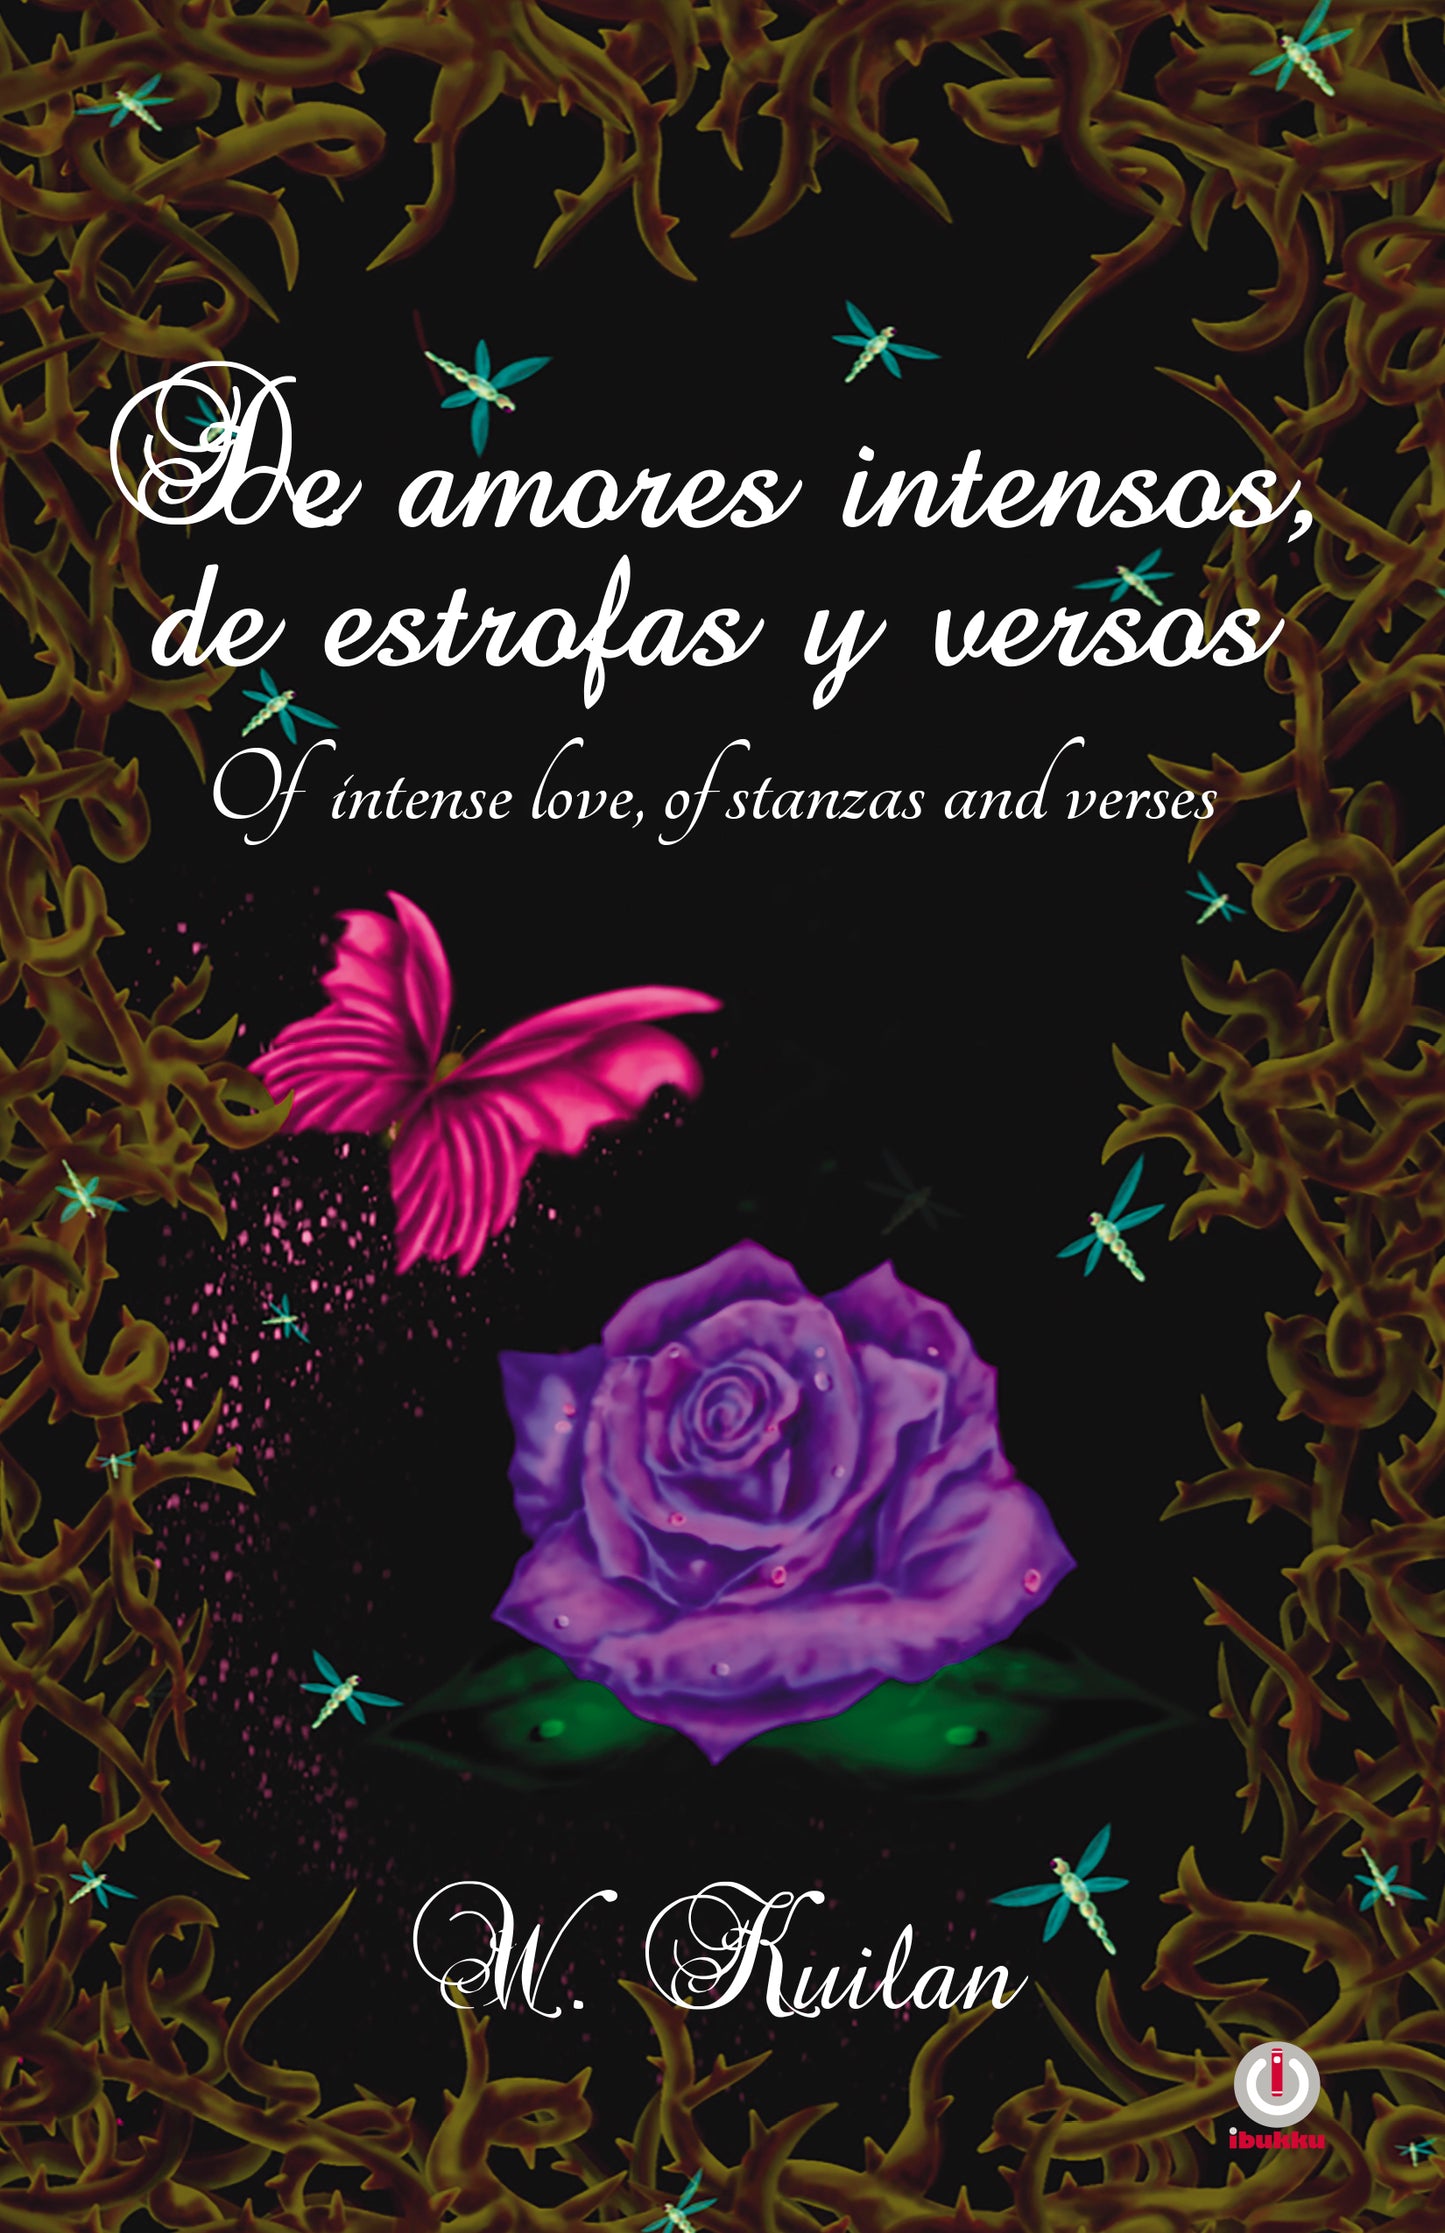 De amores intensos, de estrofas y versos: Of intense love, of stanzas and verses